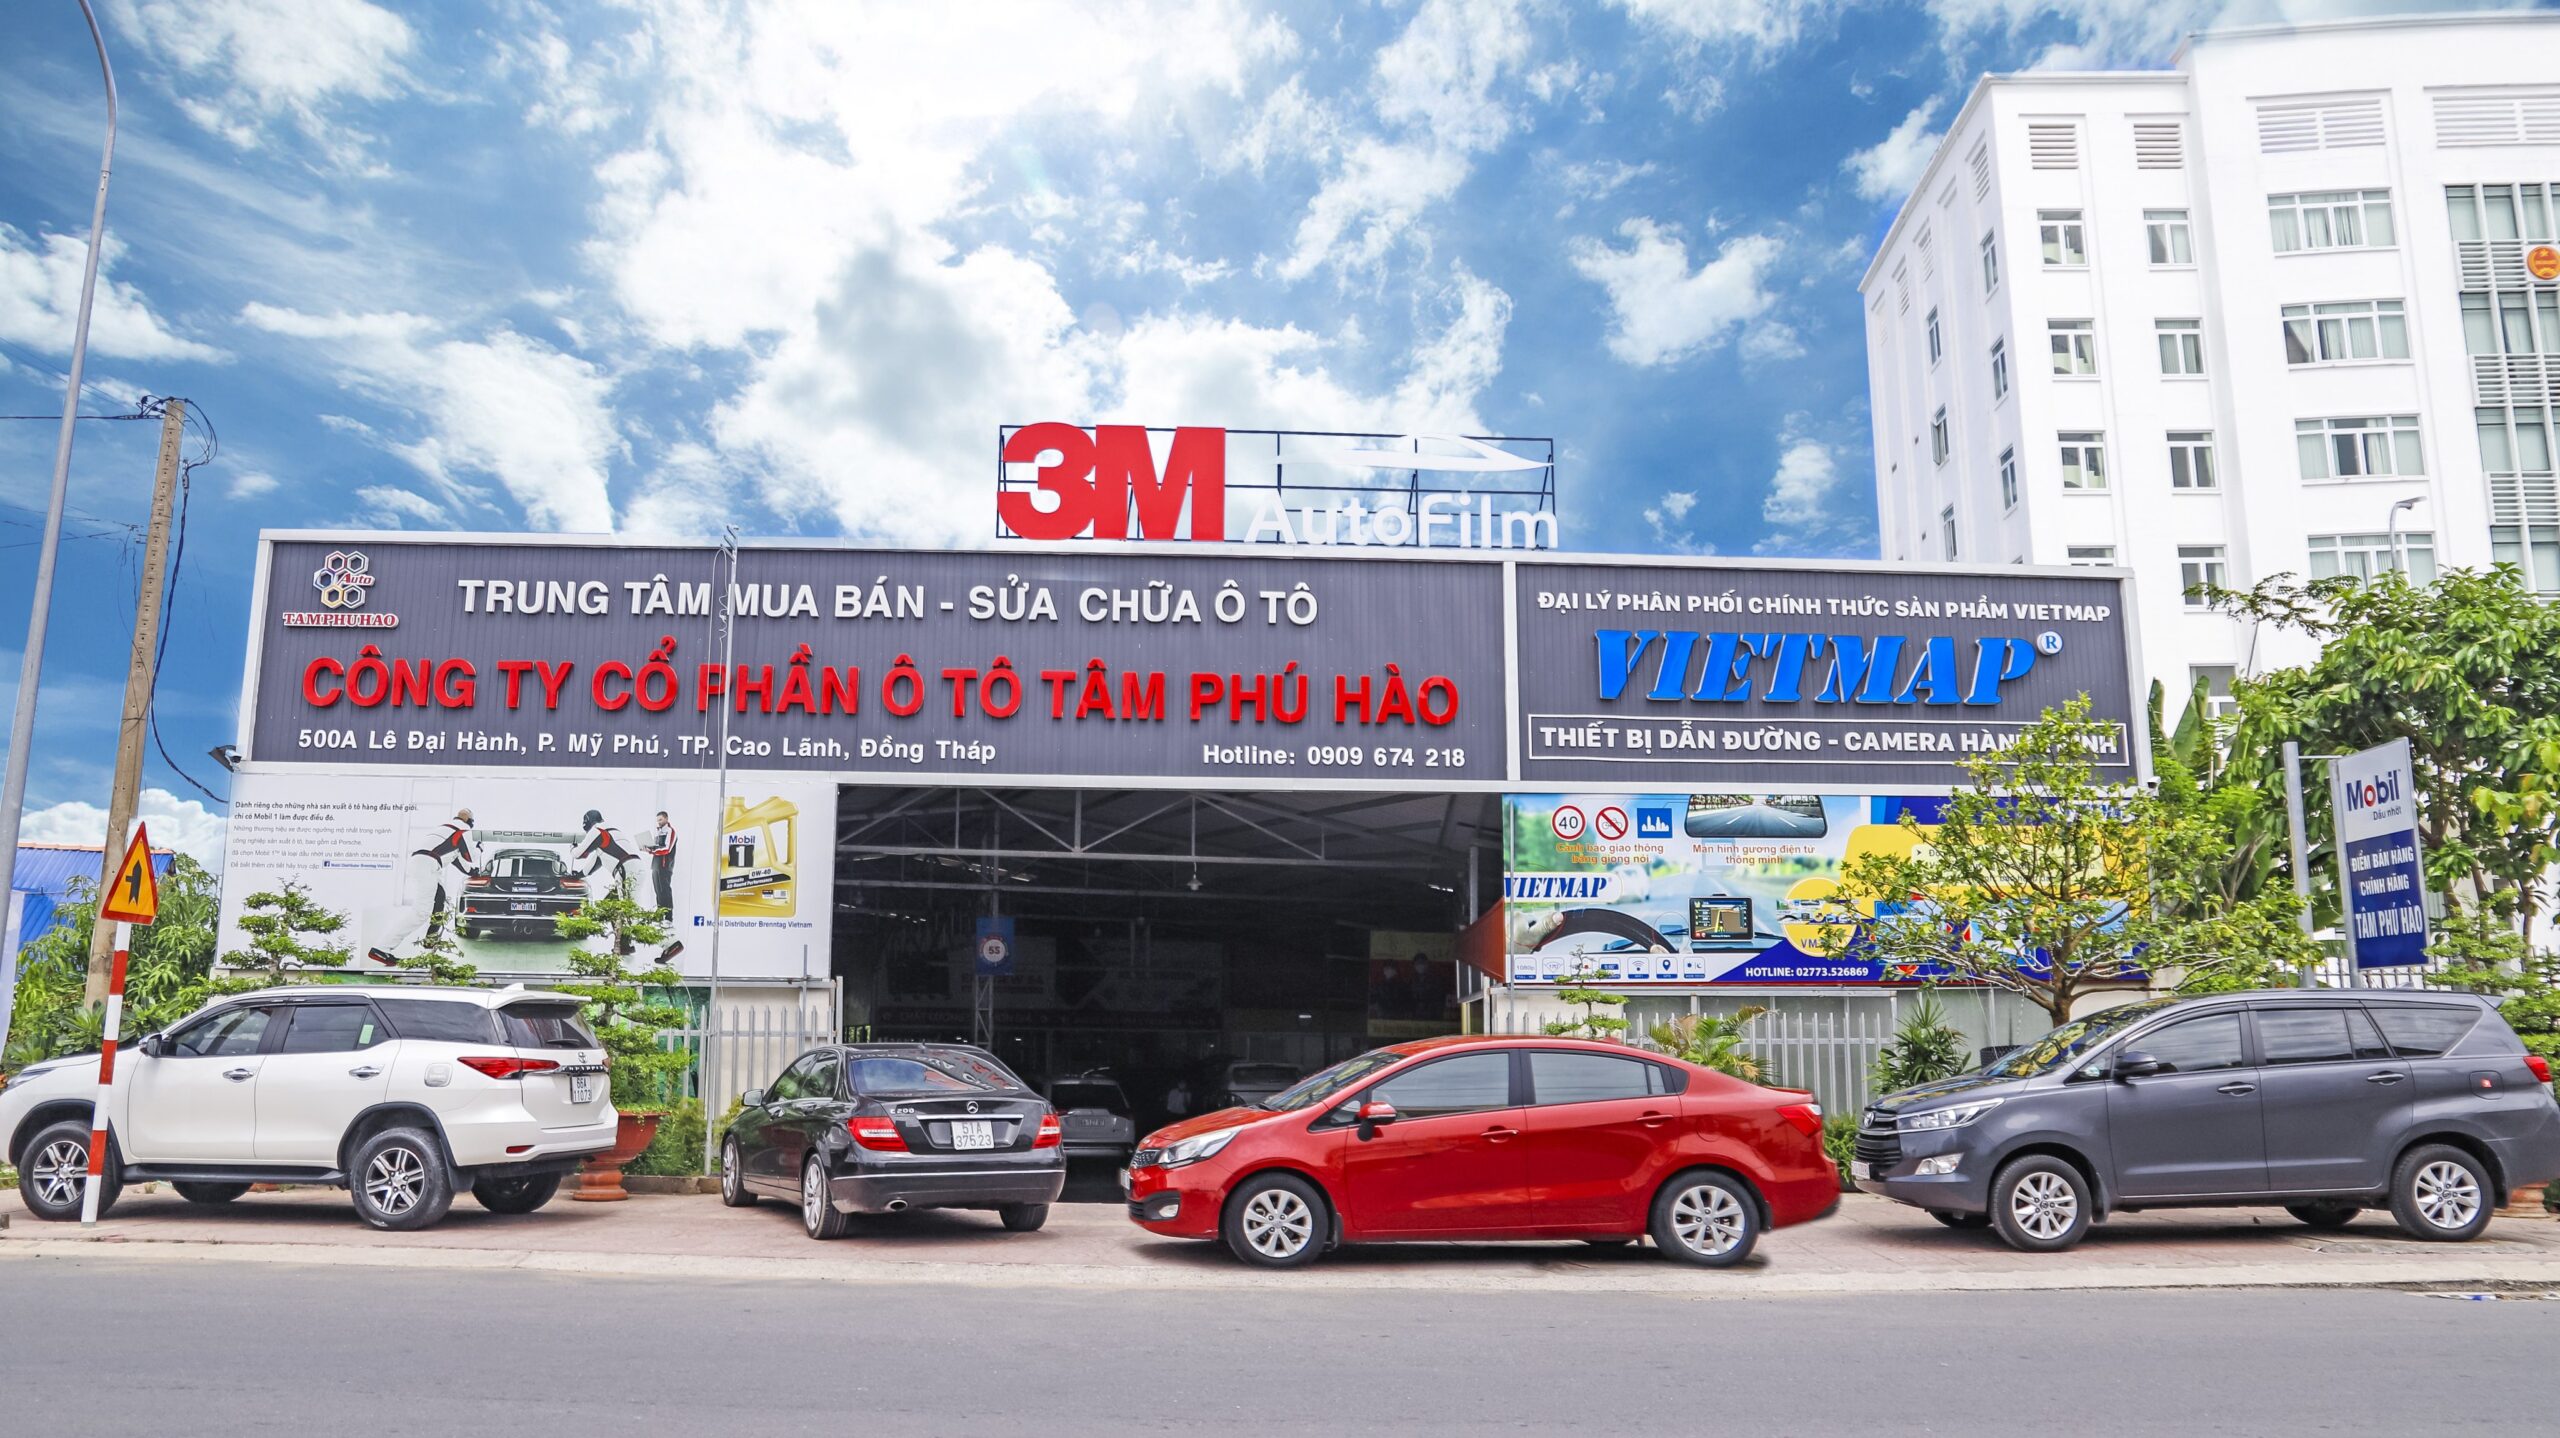 Tâm Phú Hào – Đại lý bán hàng vật liệu cách âm SIP tại Đồng Tháp